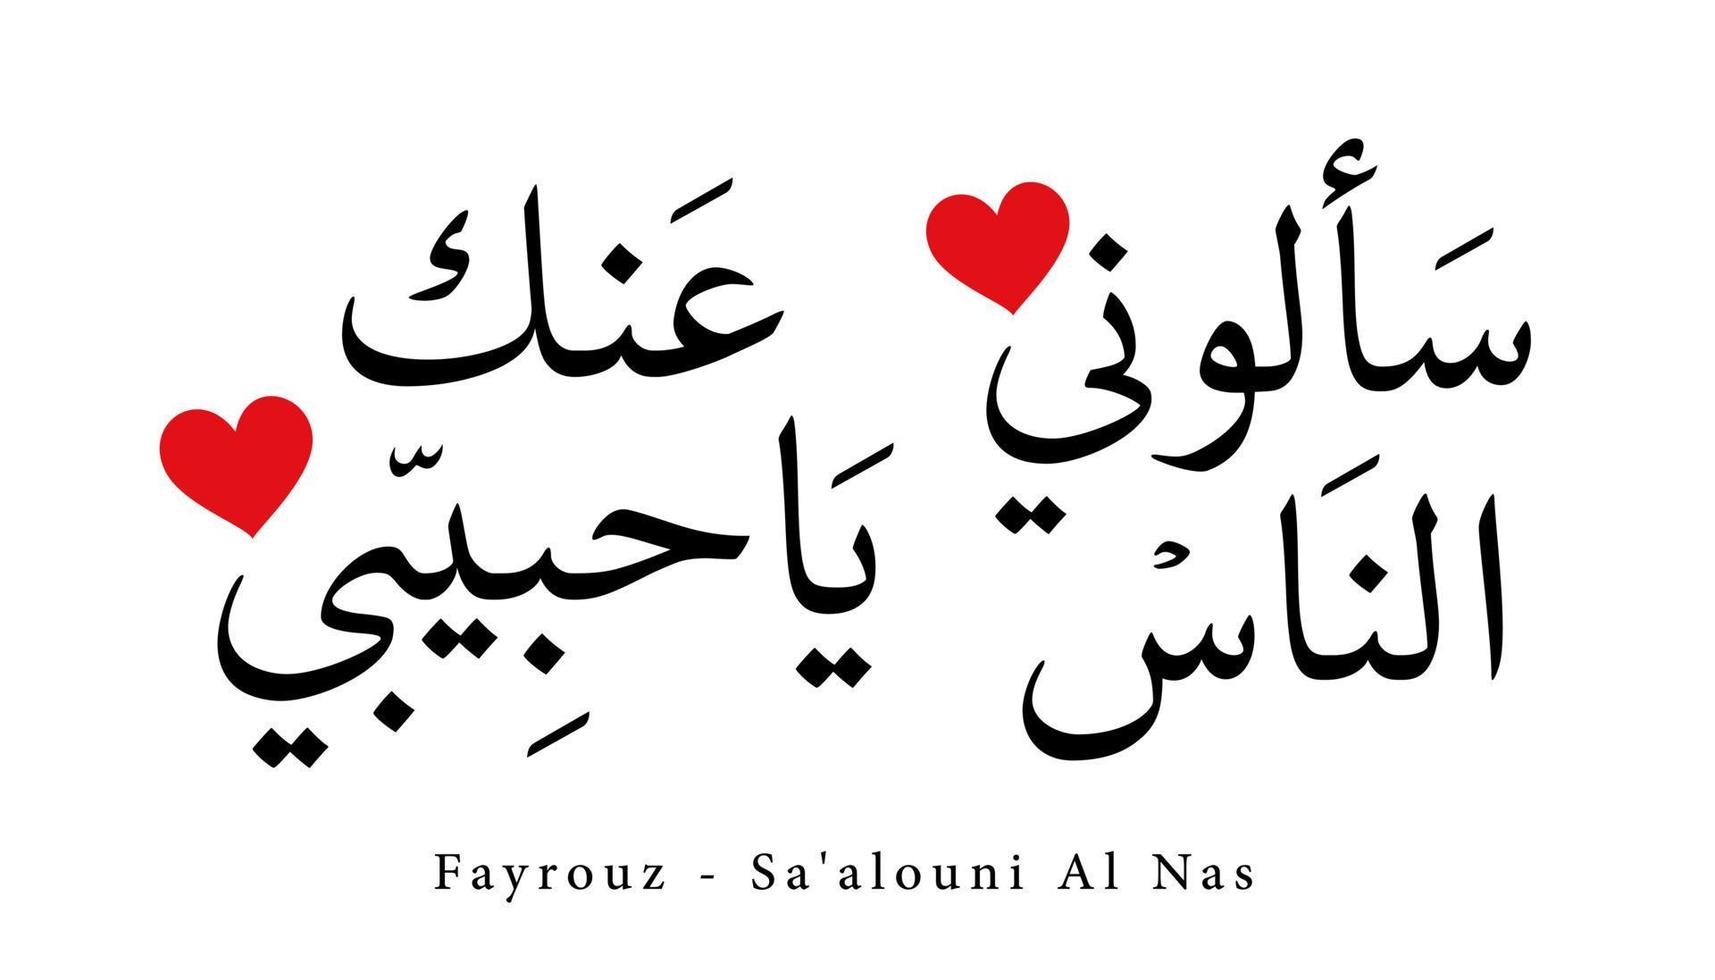 arabisk kalligrafi sång översatt 'fayrouz - sa'alouni al nas' arabiska bokstäver alfabetet teckensnitt bokstäver islamisk logotyp vektorillustration vektor